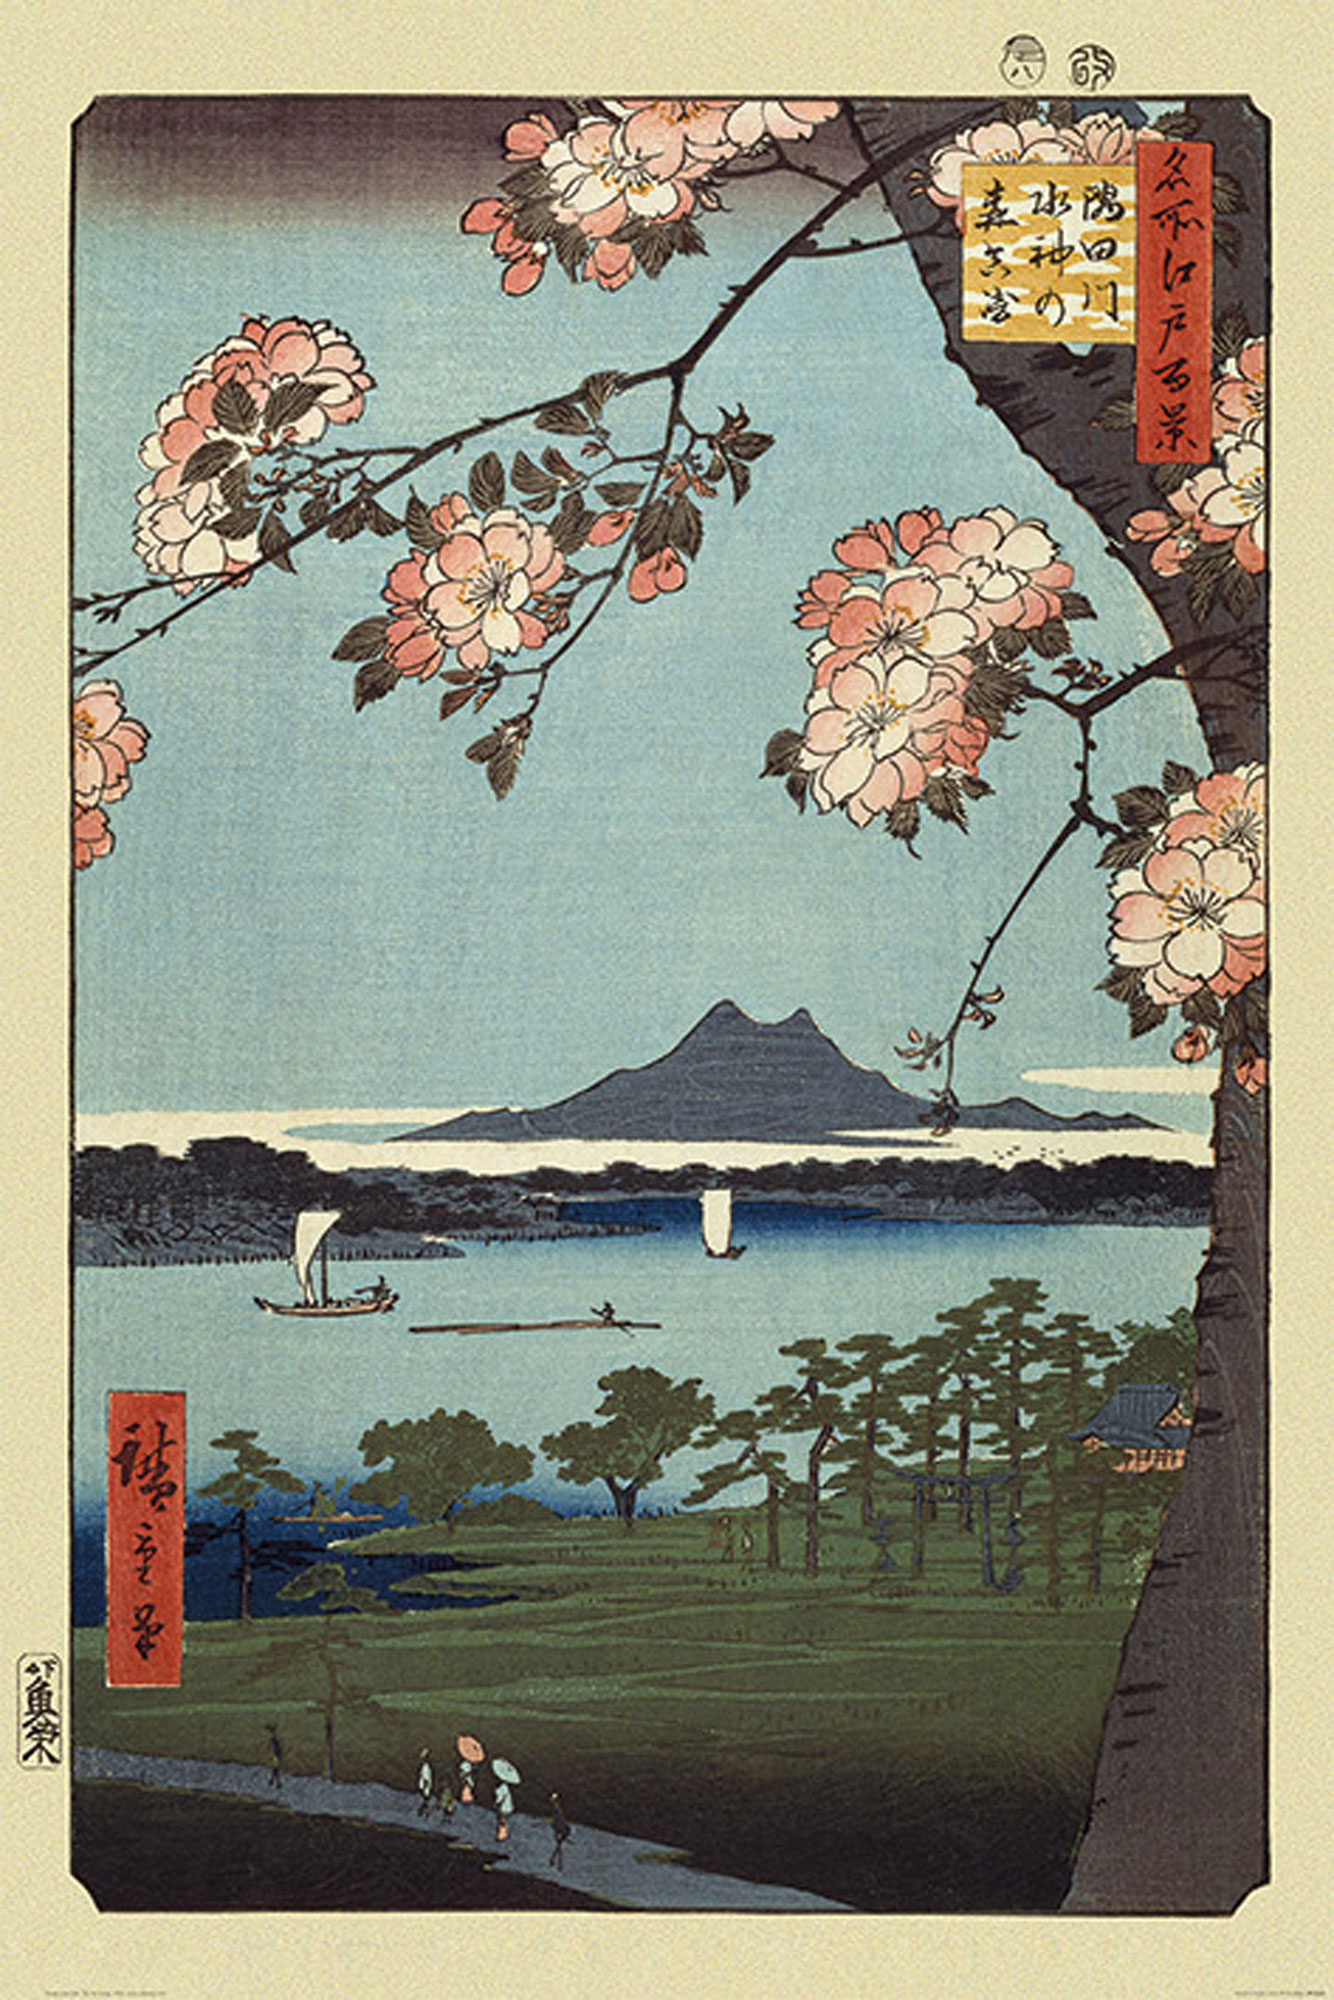 Masaki Grove - Hiroshige & Suijin